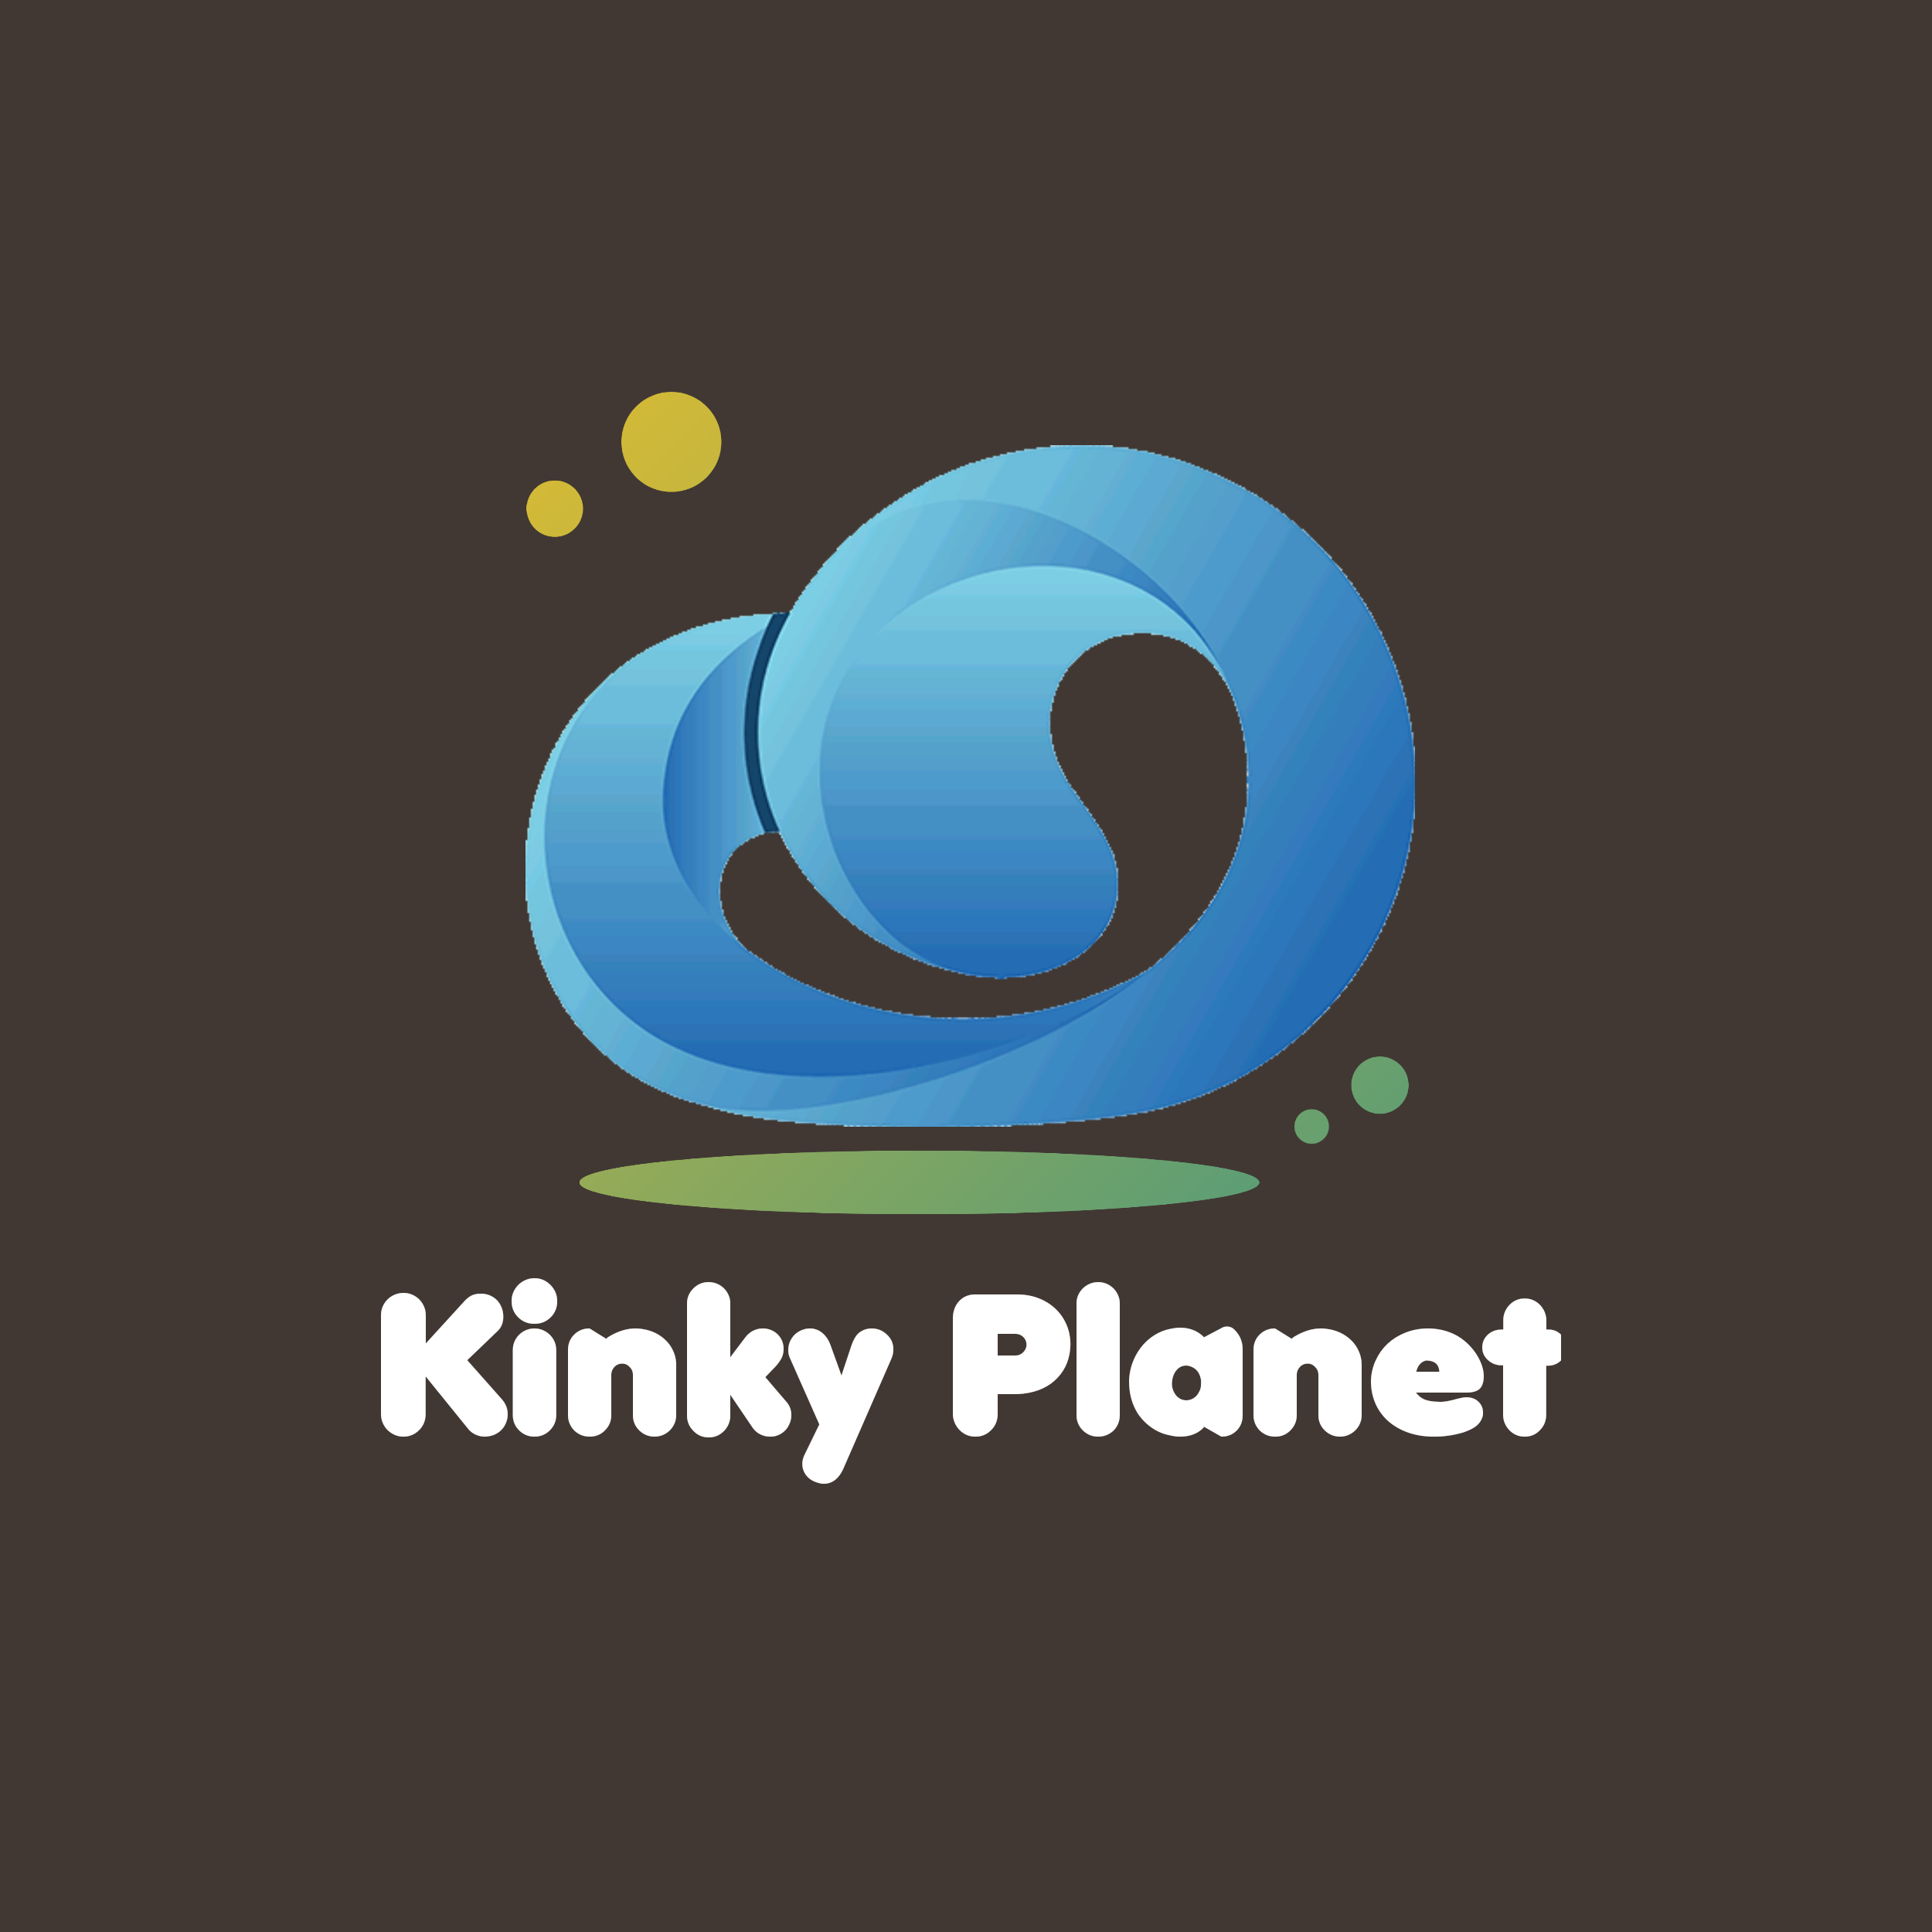 Kinky Planet